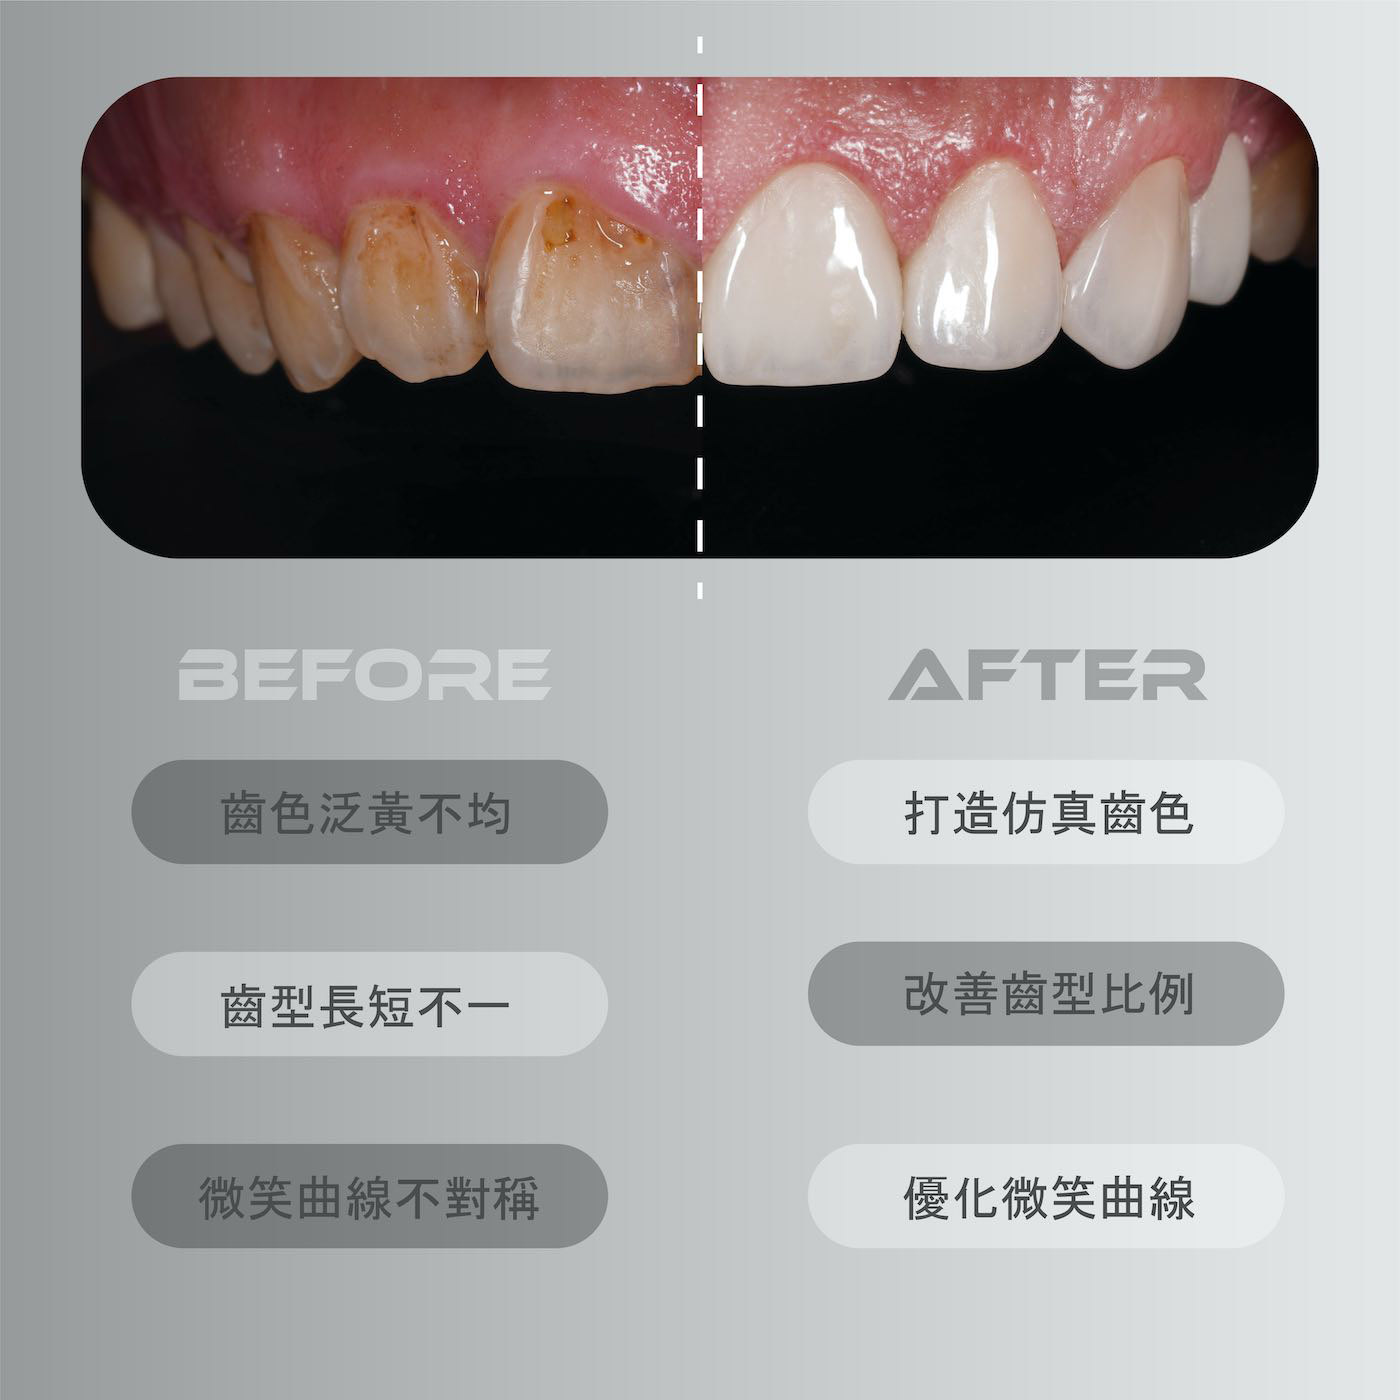 療程前有牙齒黃、牙齒顏色不均、牙齒長短不一、微笑曲線不對稱等問題；陶瓷貼片療程後打造仿真齒色、改善齒型比例並優化微笑曲線